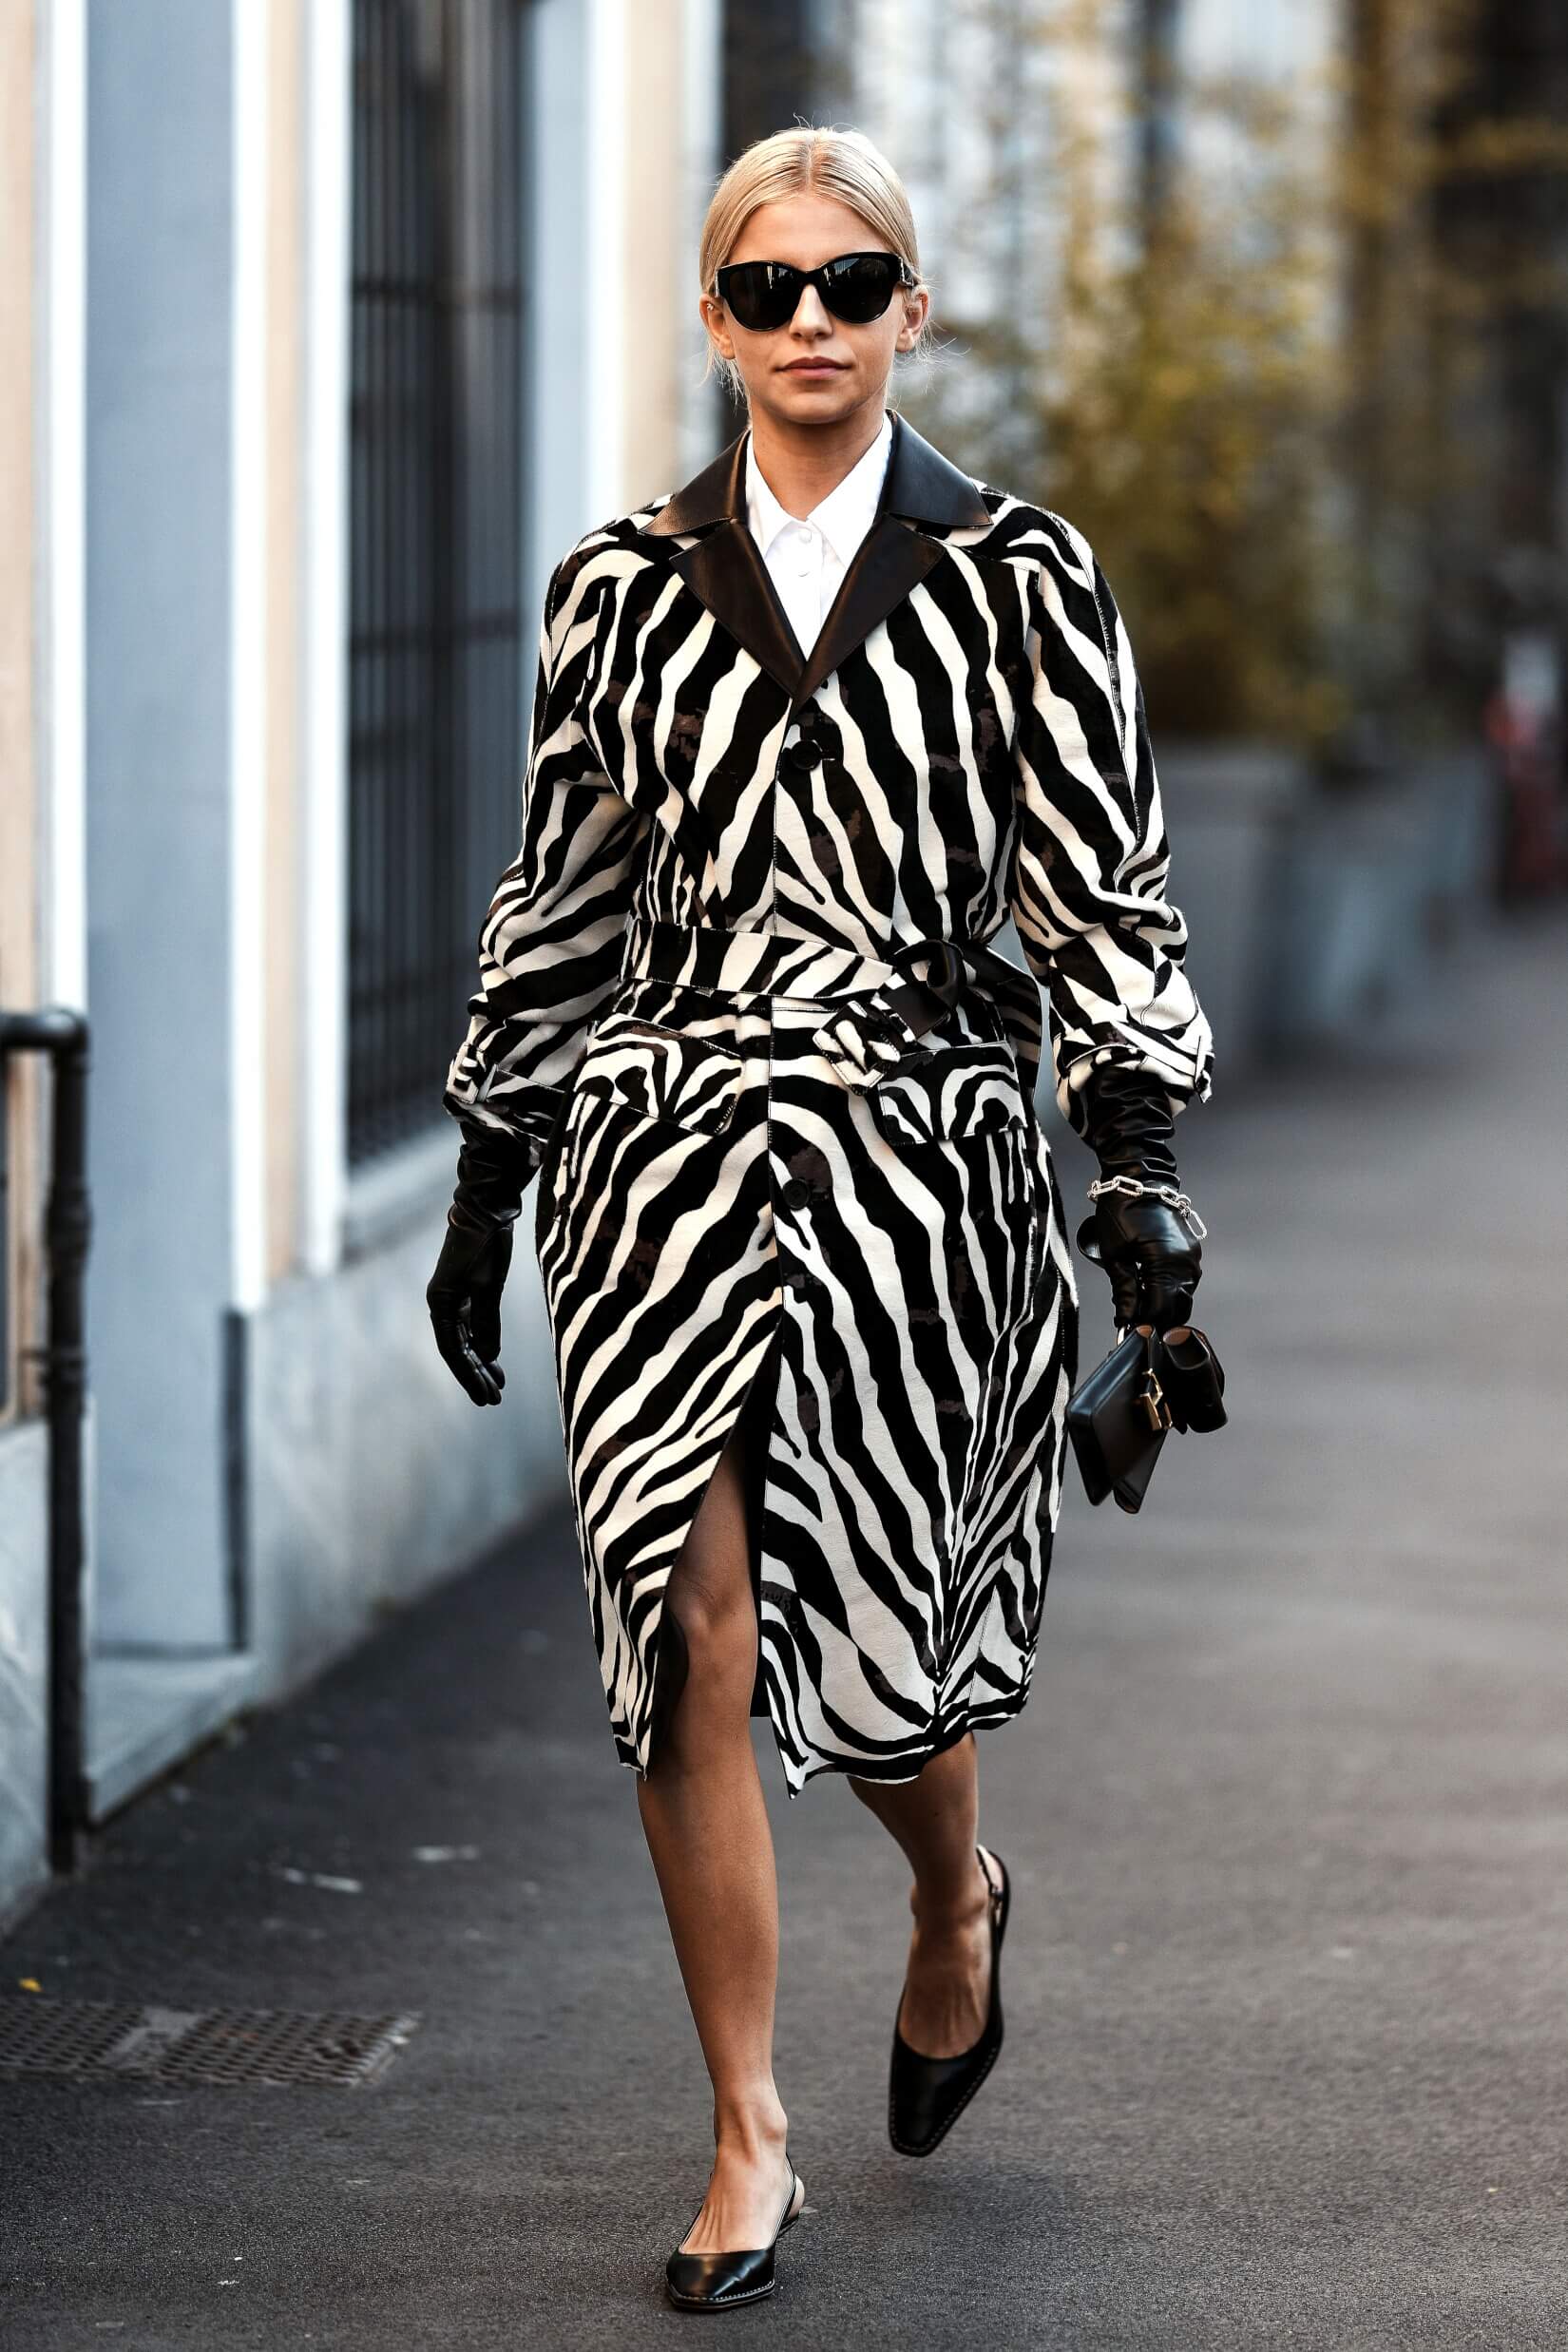 Comment porter le manteau en cuir : 10 tenues pour femme